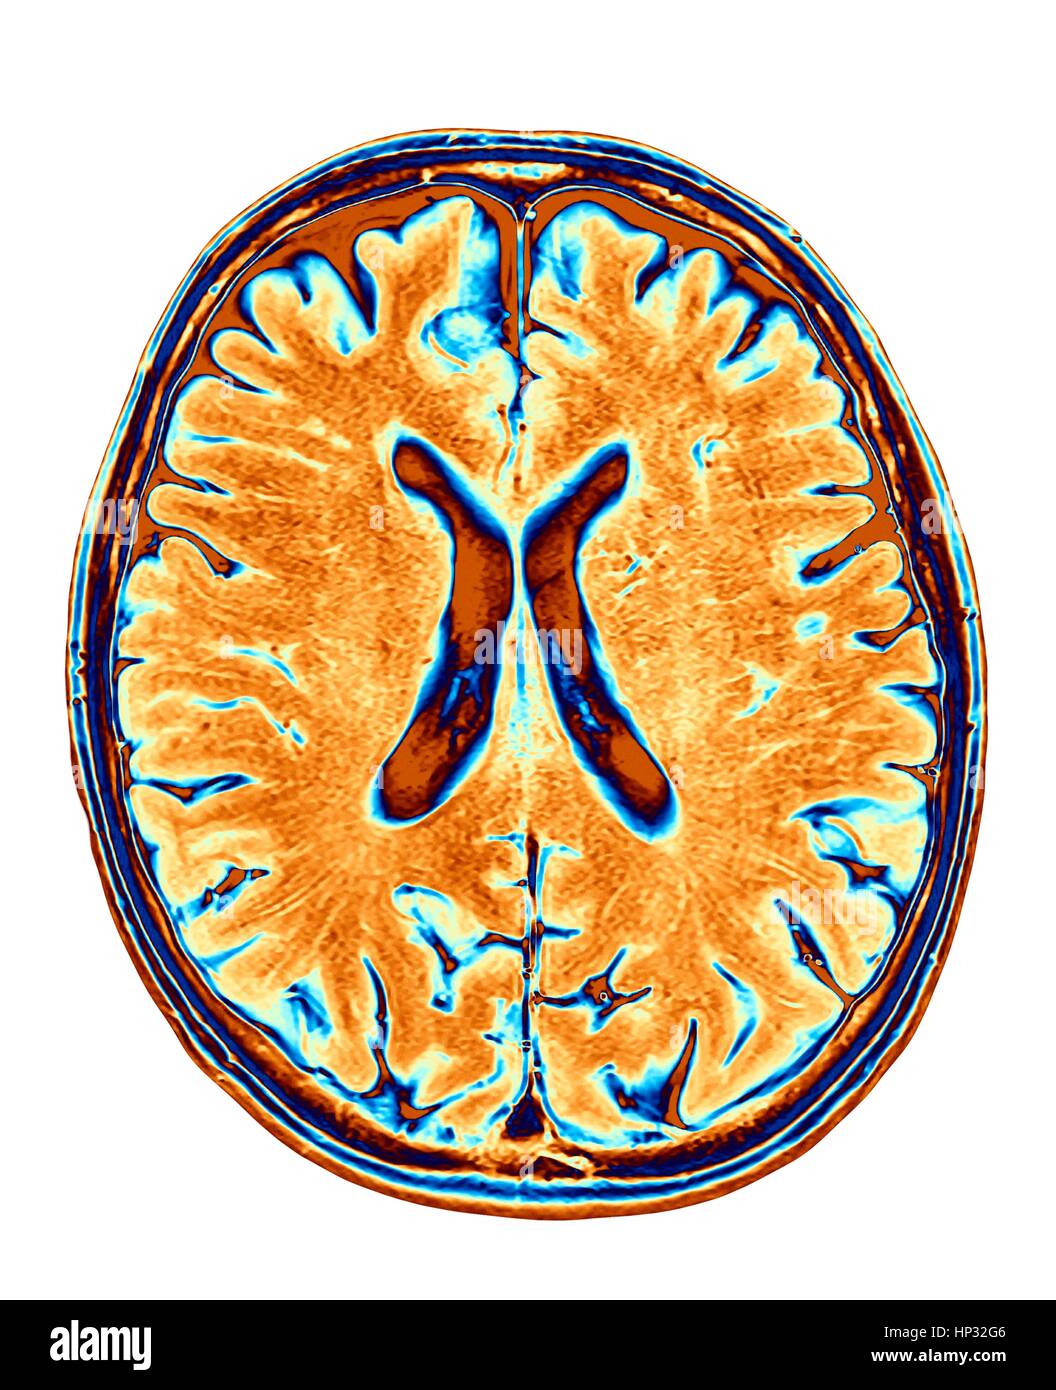 Cervello normale. Colorato di risonanza magnetica (RM) scansione di una sezione assiale attraverso un cervello sano, le immagini mostra la corteccia cerebrale e del ventricolo laterale (X-sagomato in medio). Foto Stock